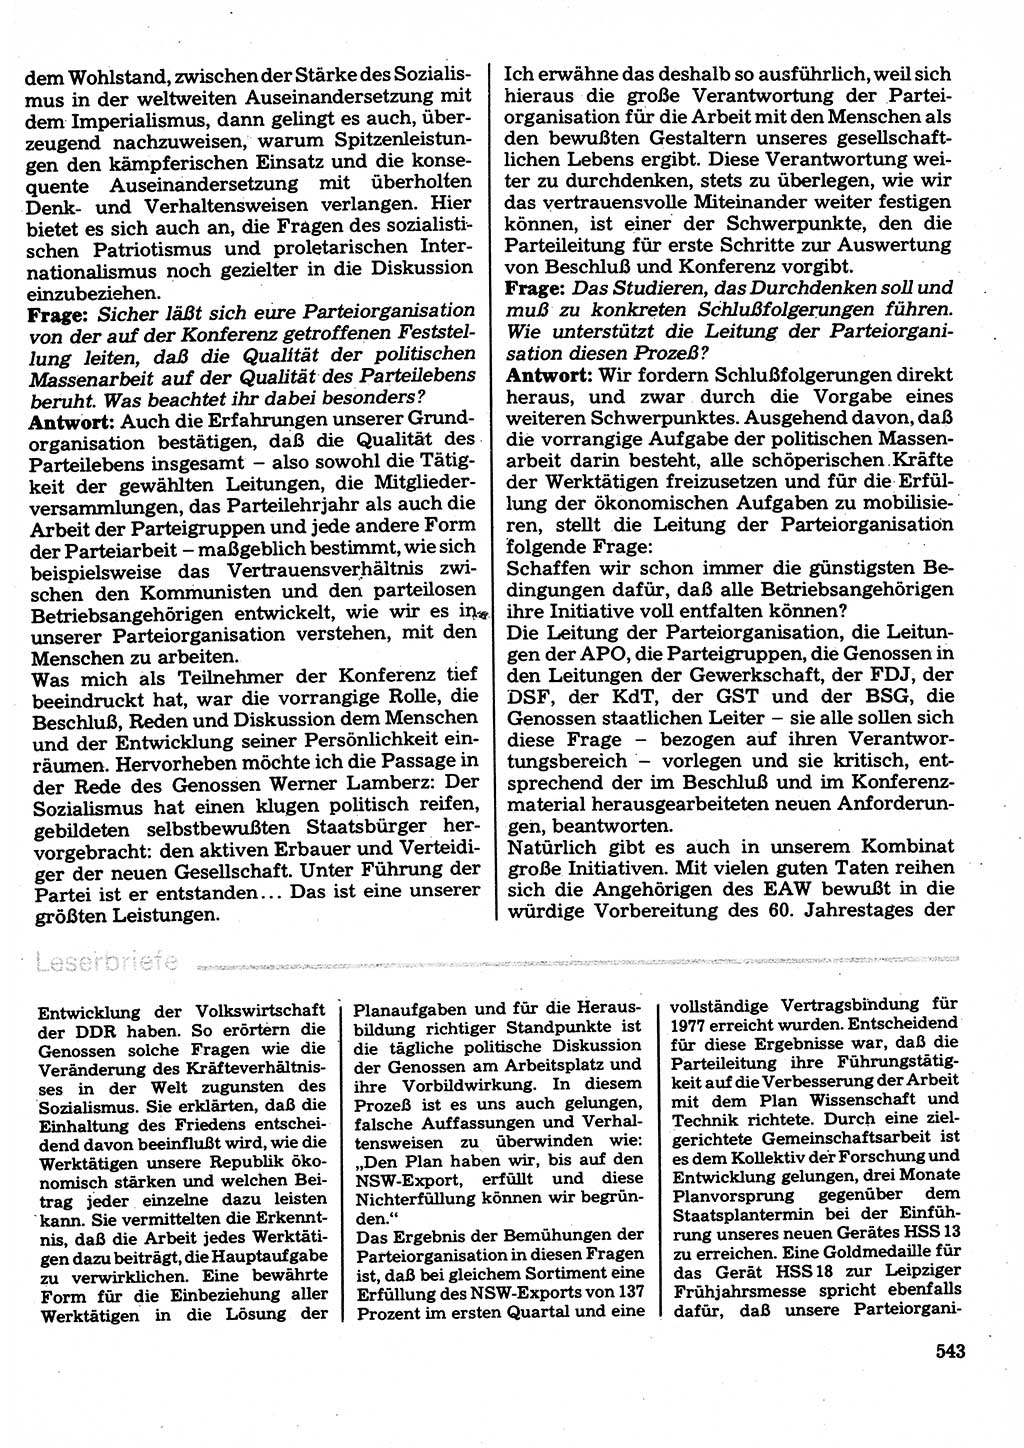 Neuer Weg (NW), Organ des Zentralkomitees (ZK) der SED (Sozialistische Einheitspartei Deutschlands) für Fragen des Parteilebens, 32. Jahrgang [Deutsche Demokratische Republik (DDR)] 1977, Seite 543 (NW ZK SED DDR 1977, S. 543)